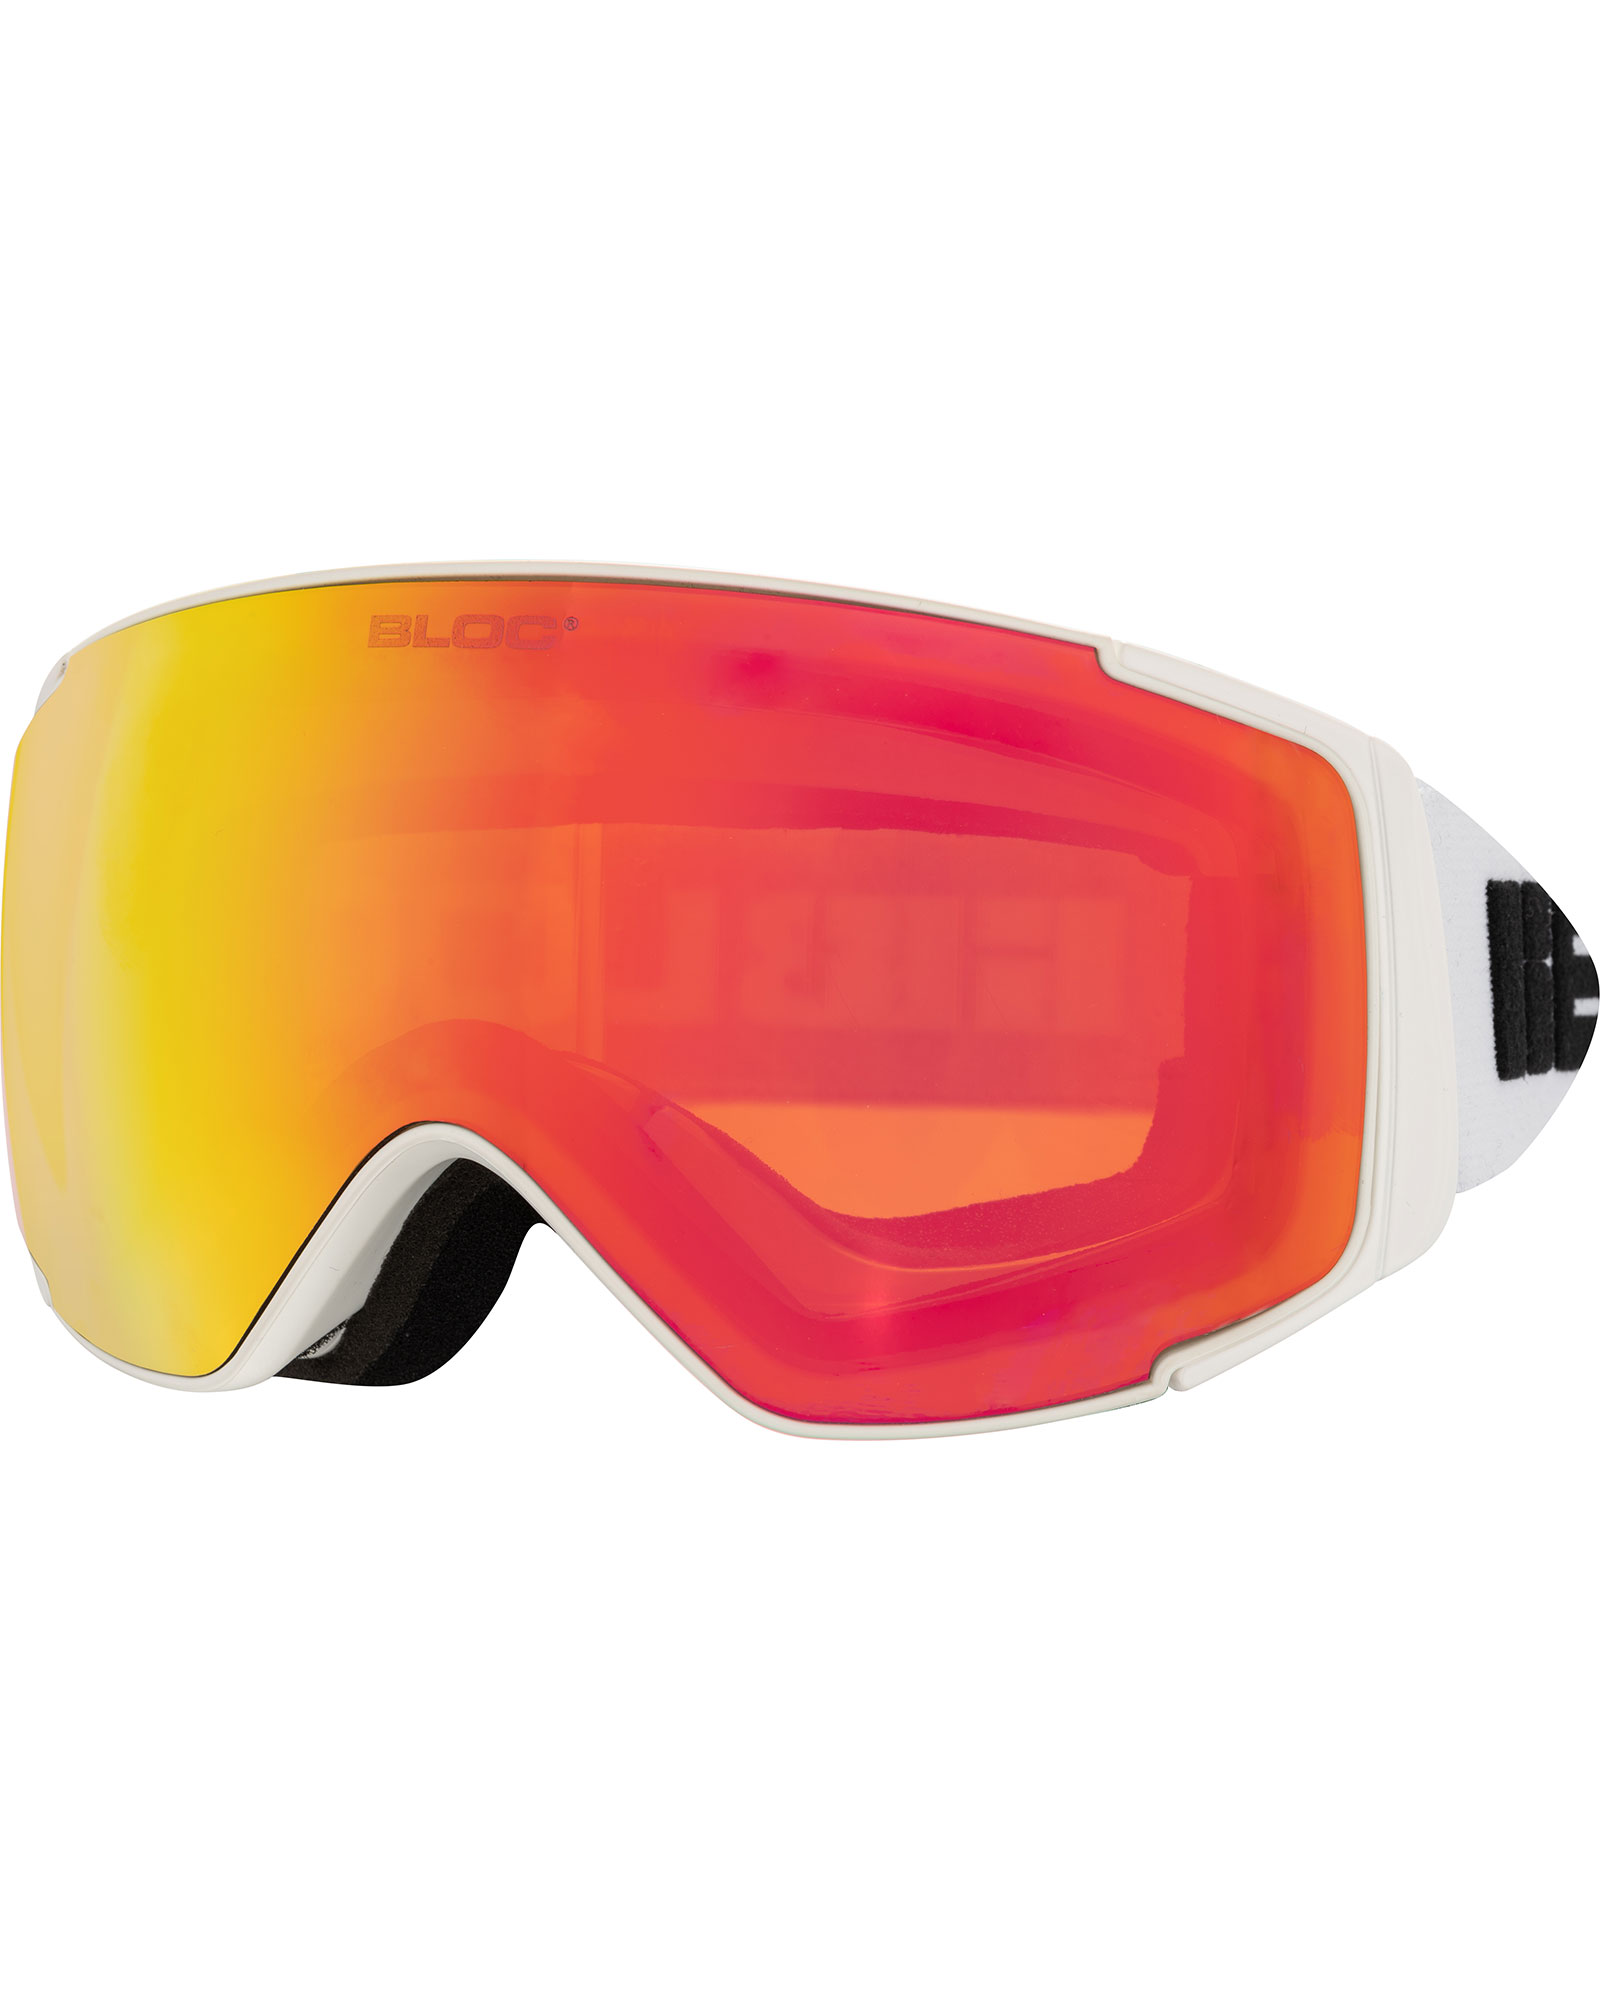 Bloc Small Fit Mercury Matte White / Orange Red Revo Youth Goggles